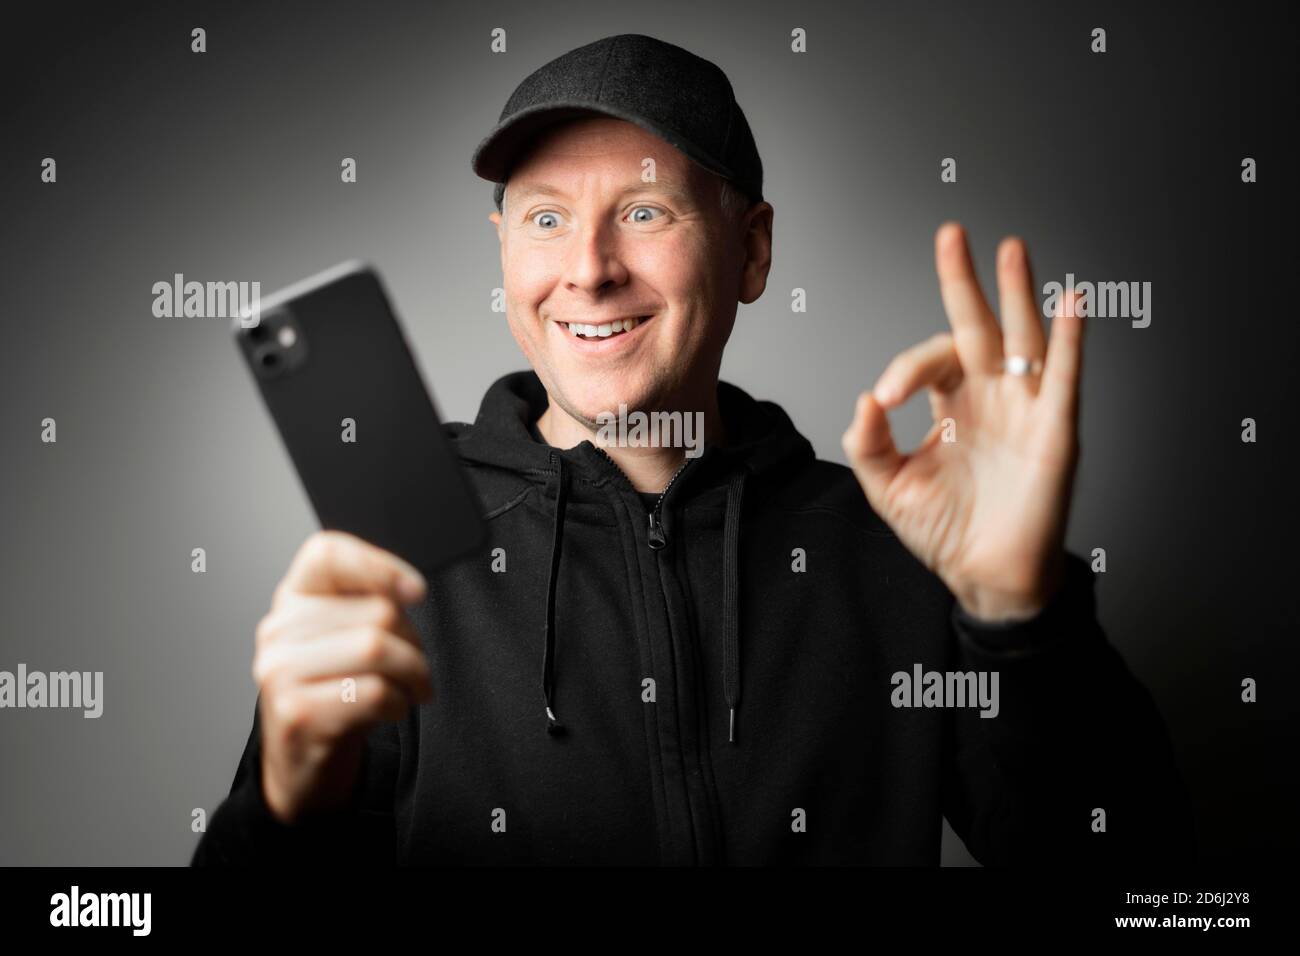 Mann in schwarzer Kleidung glücklich mit der Nachricht auf dem Telefon oder dem Telefon selbst. Stockfoto